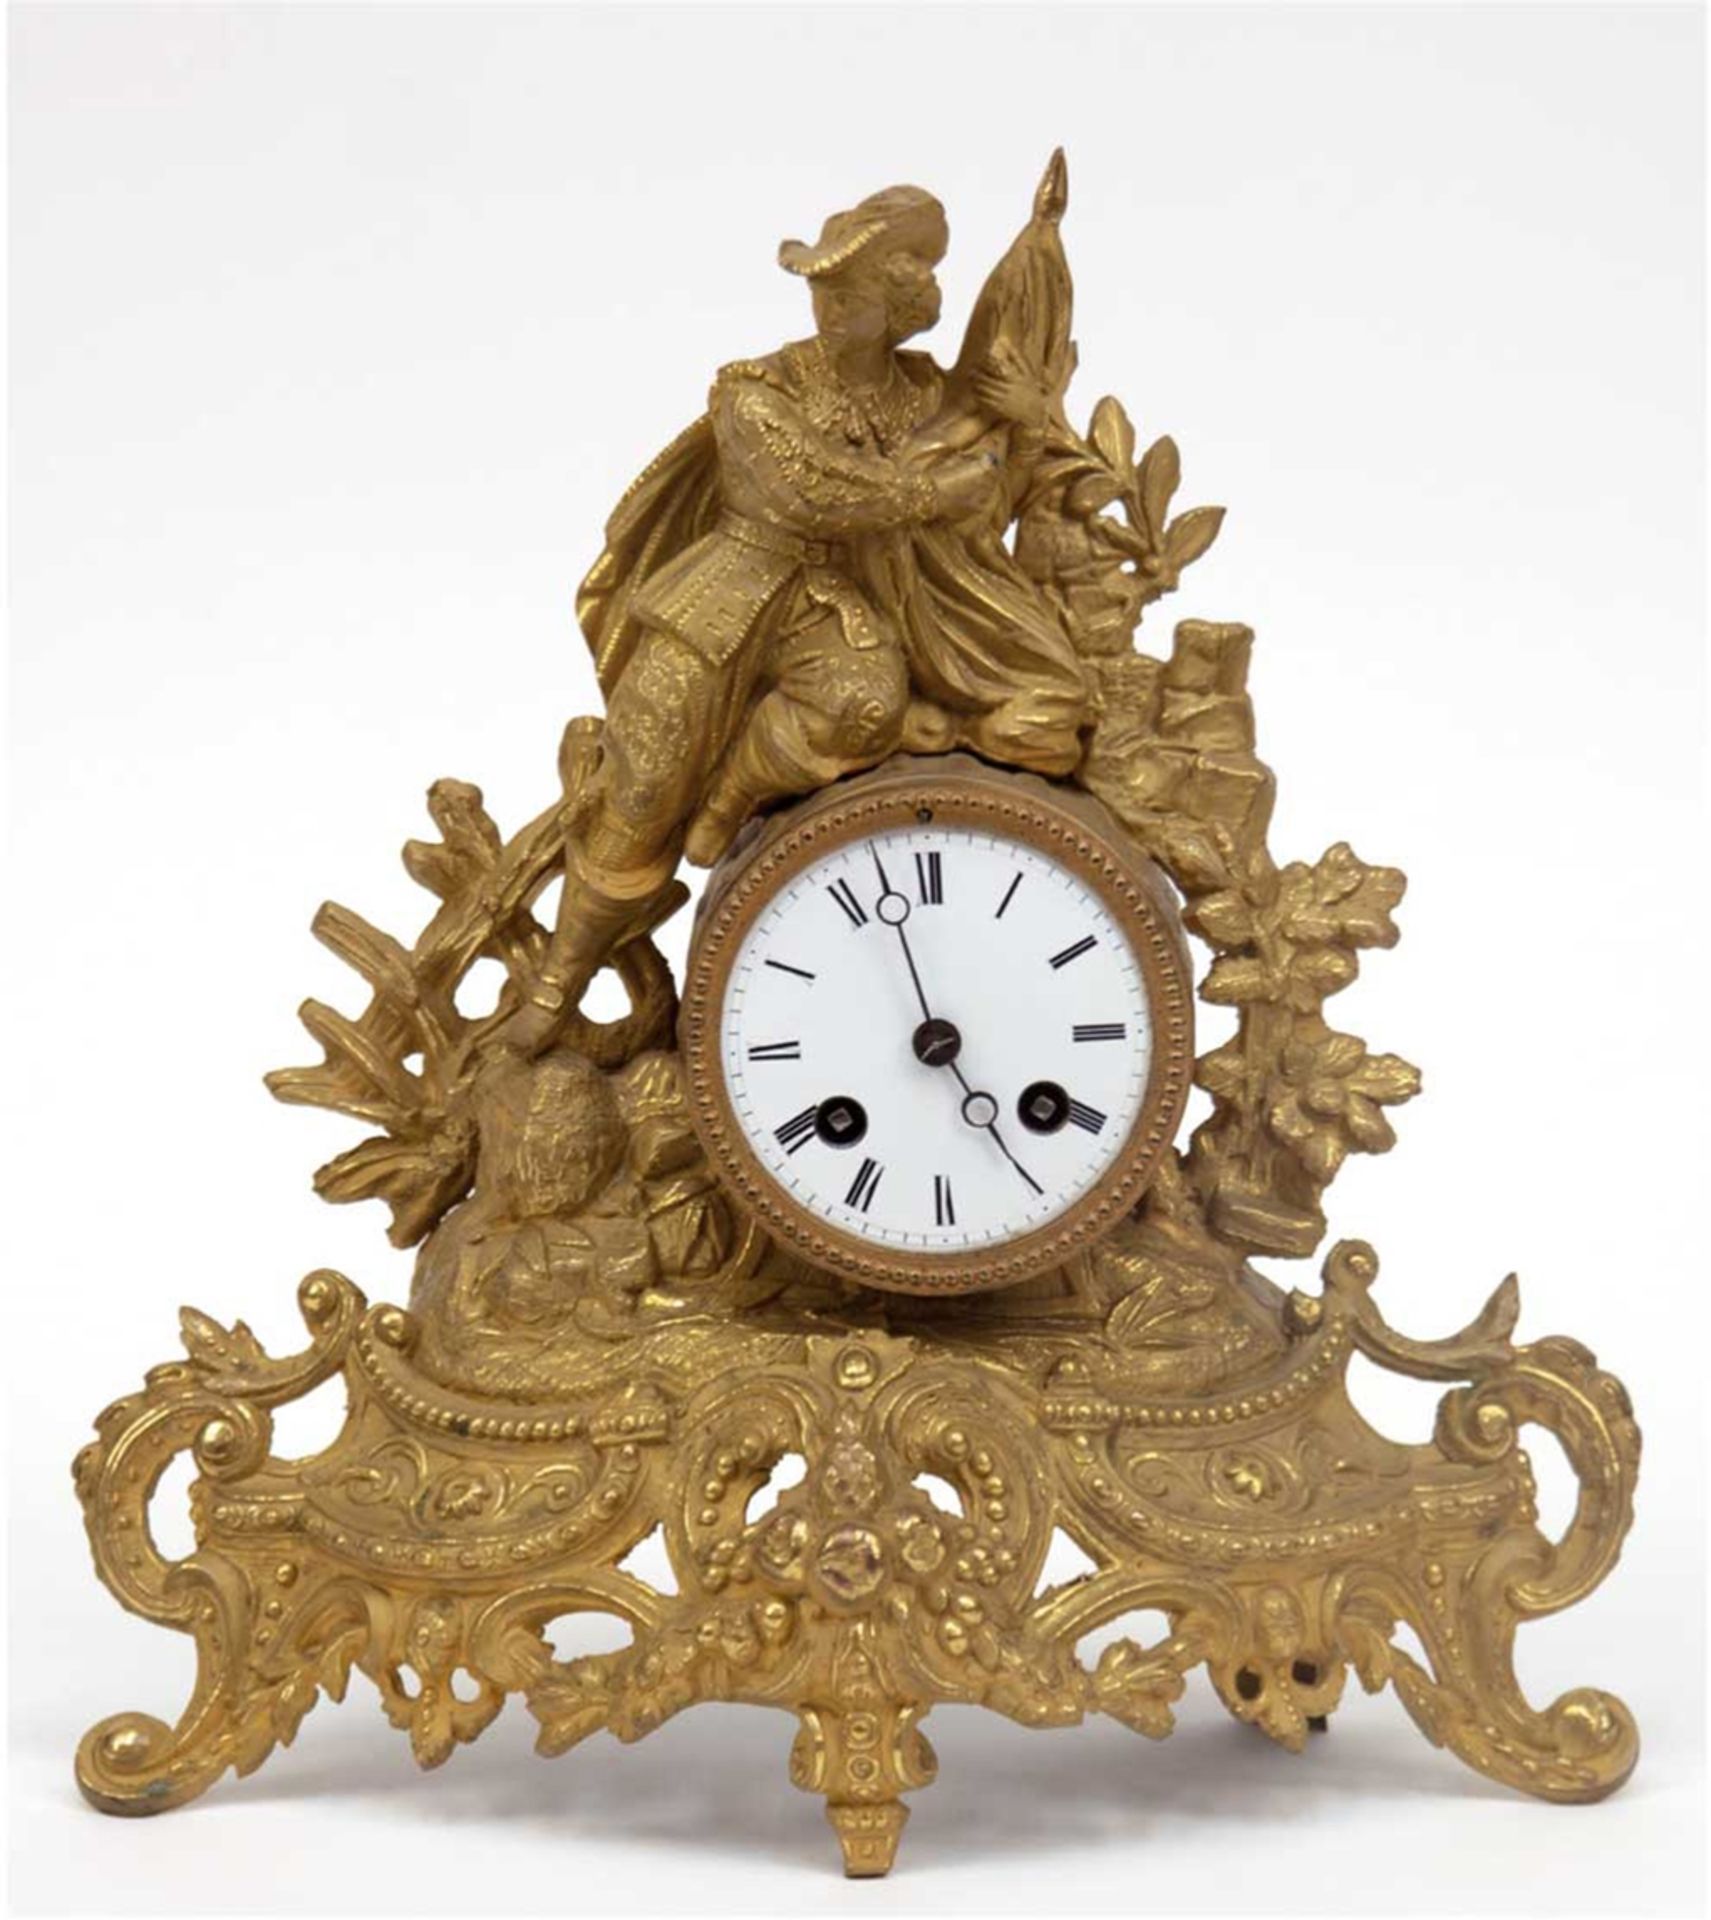 Französische Figurenpendule, Metall, vergoldet, mit Halb- und Vollstundenschlag auf Glocke, auf dem